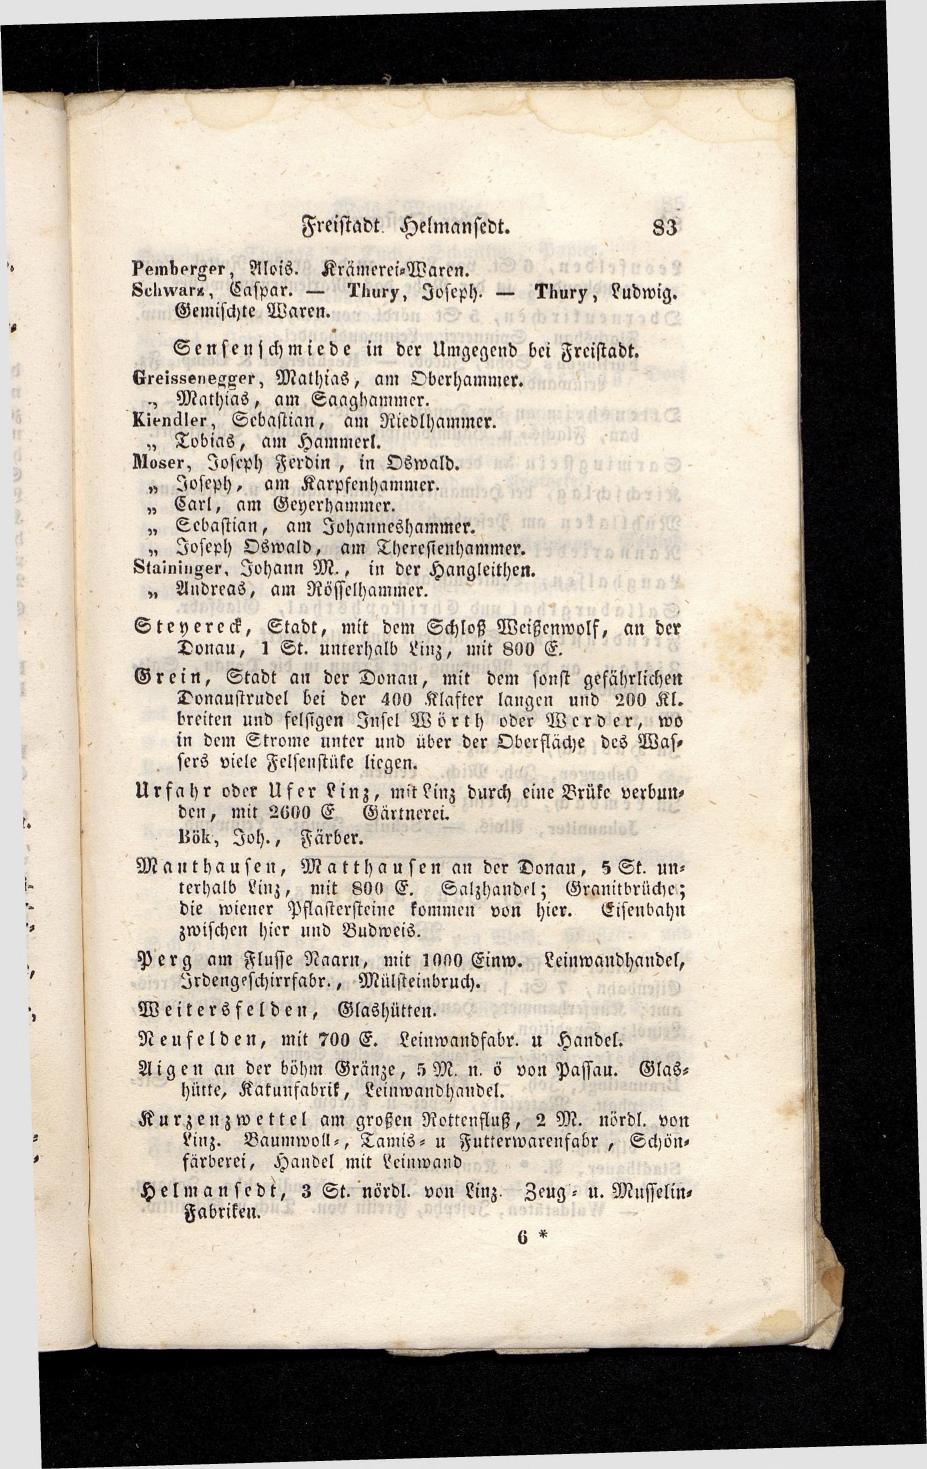 Grosses Adressbuch der Kaufleute. No. 13. Oesterreich ober u. unter der Enns 1844 - Seite 87